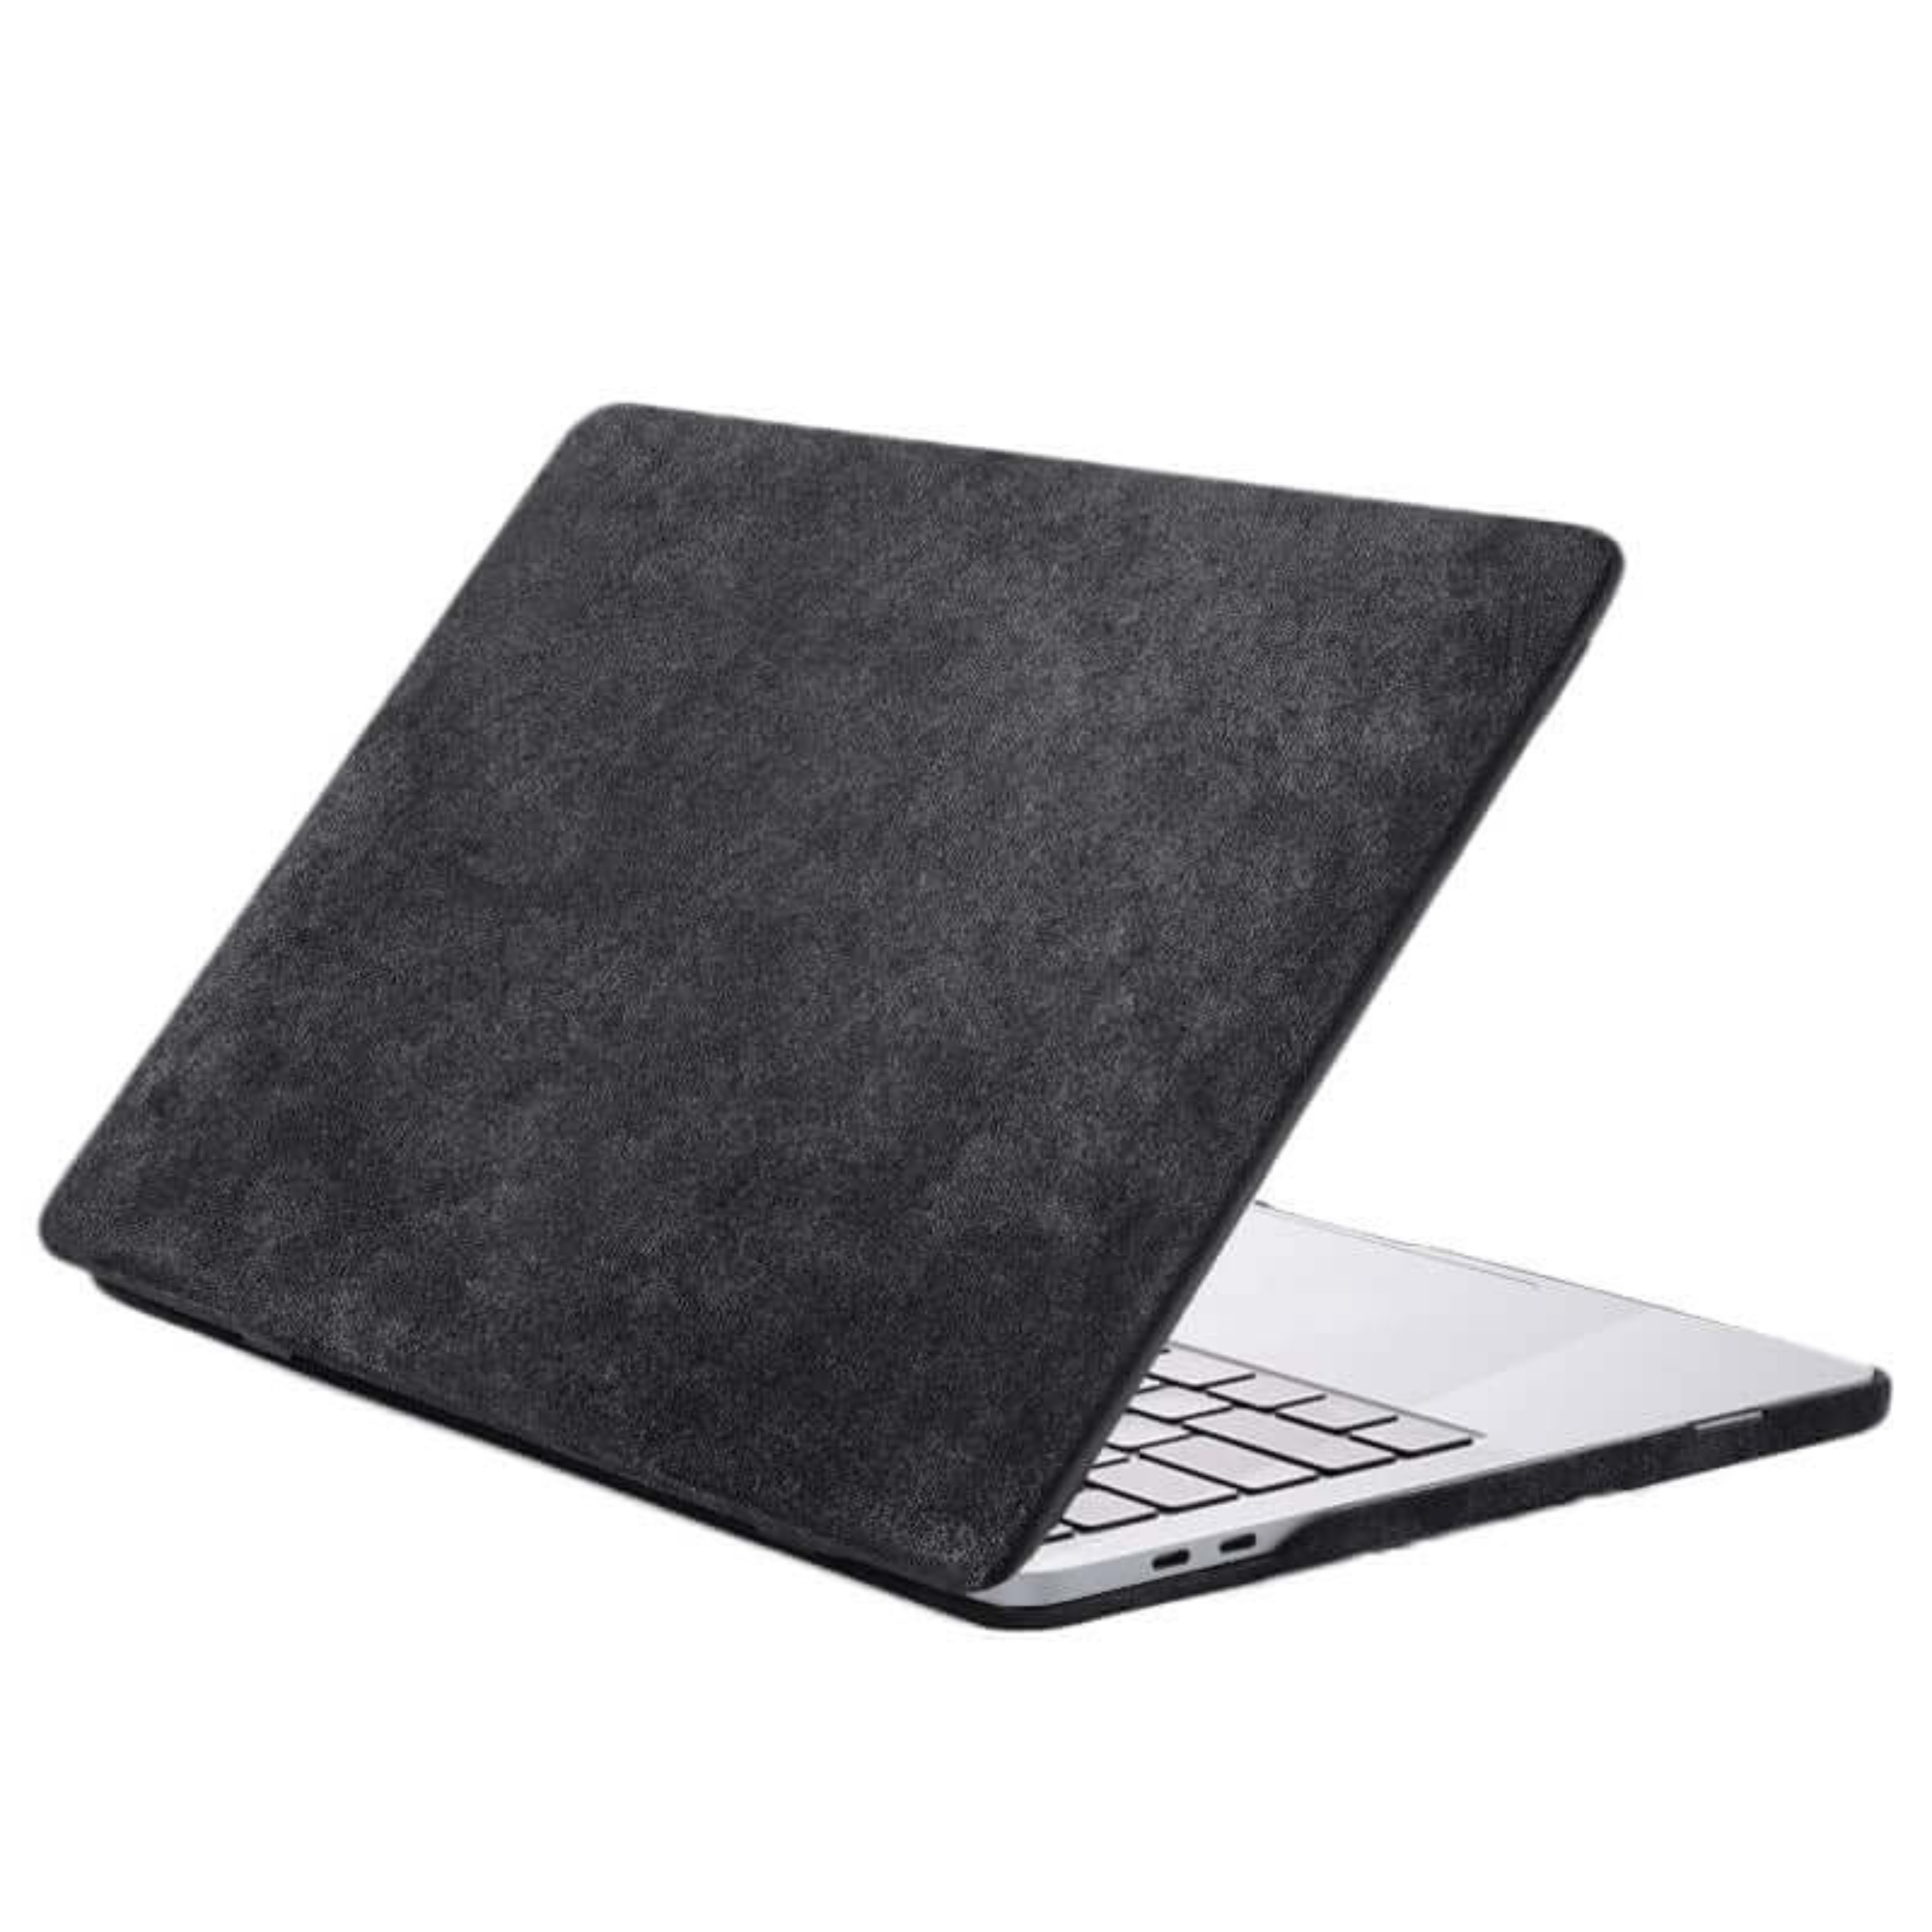 Alcantara Macbook Pro Cover - 13 Inch - Space Grey